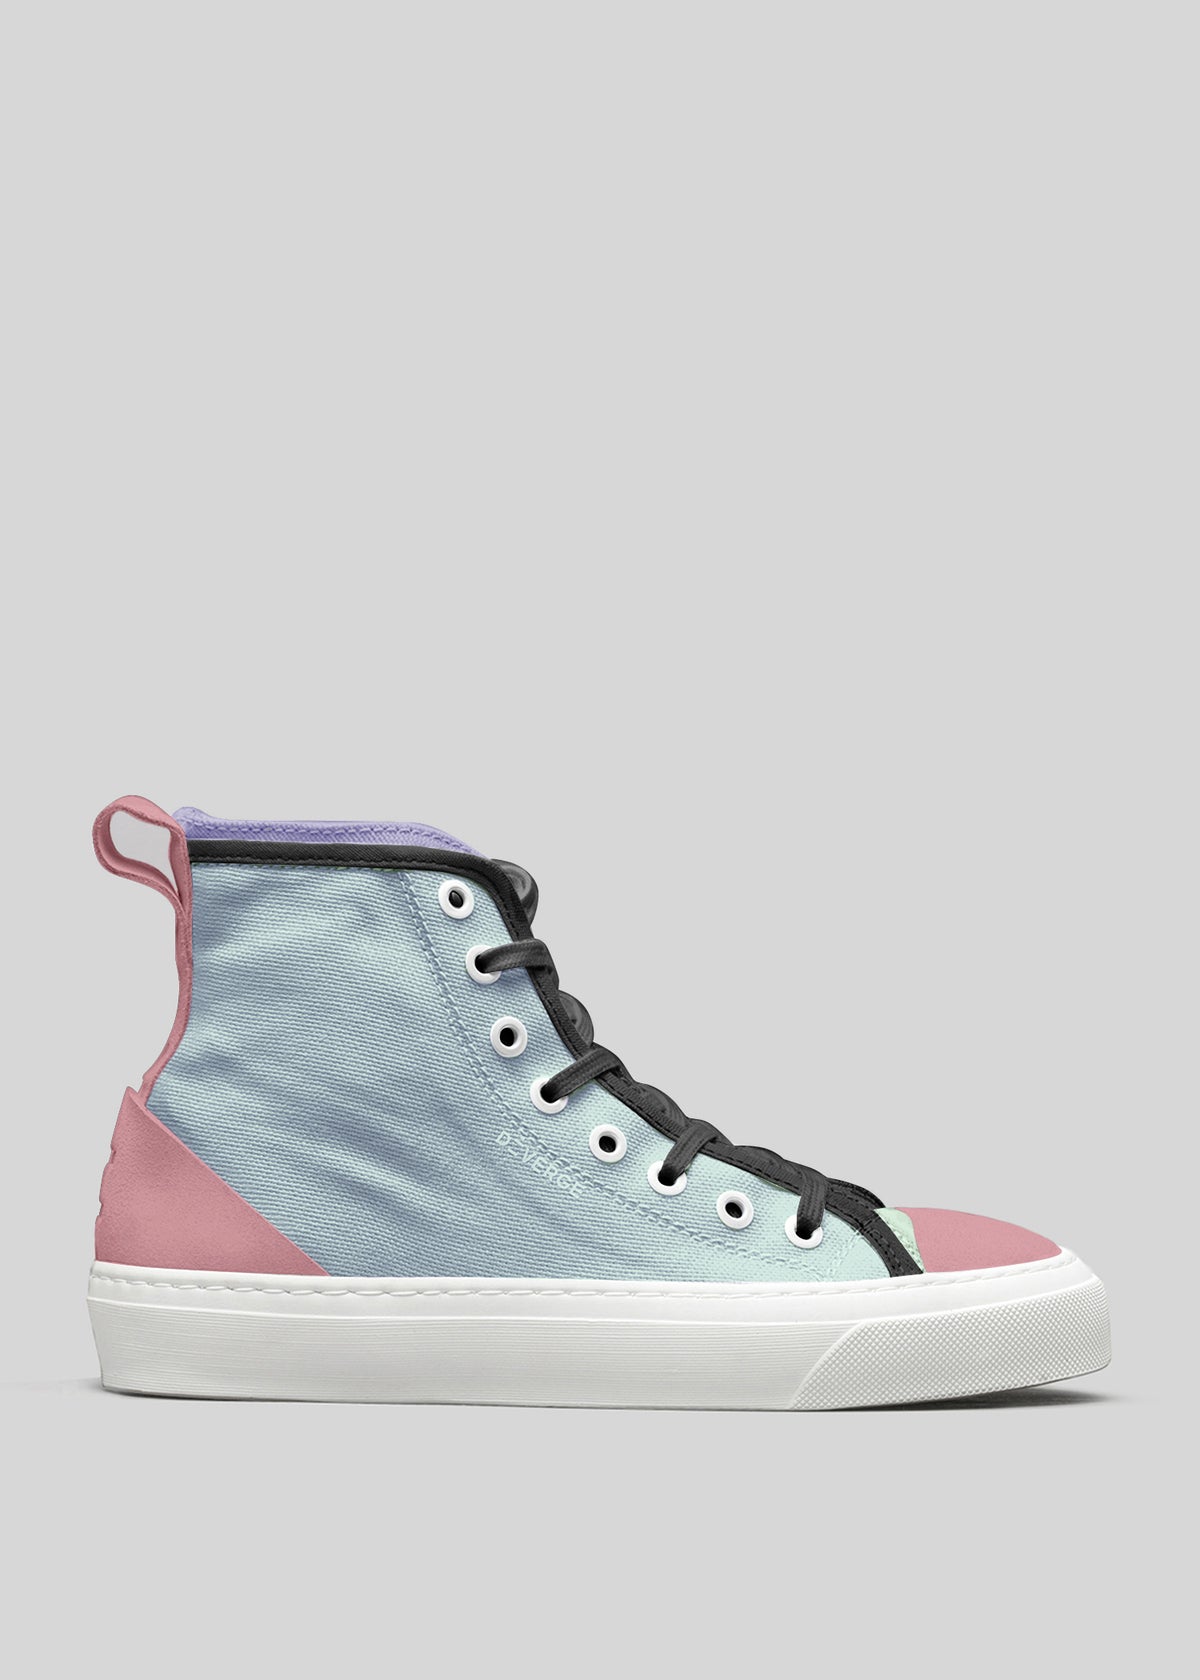 Sneaker alta in tela nei colori blu e rosa pastello con lacci neri, su sfondo grigio, TH0006 di Rita.